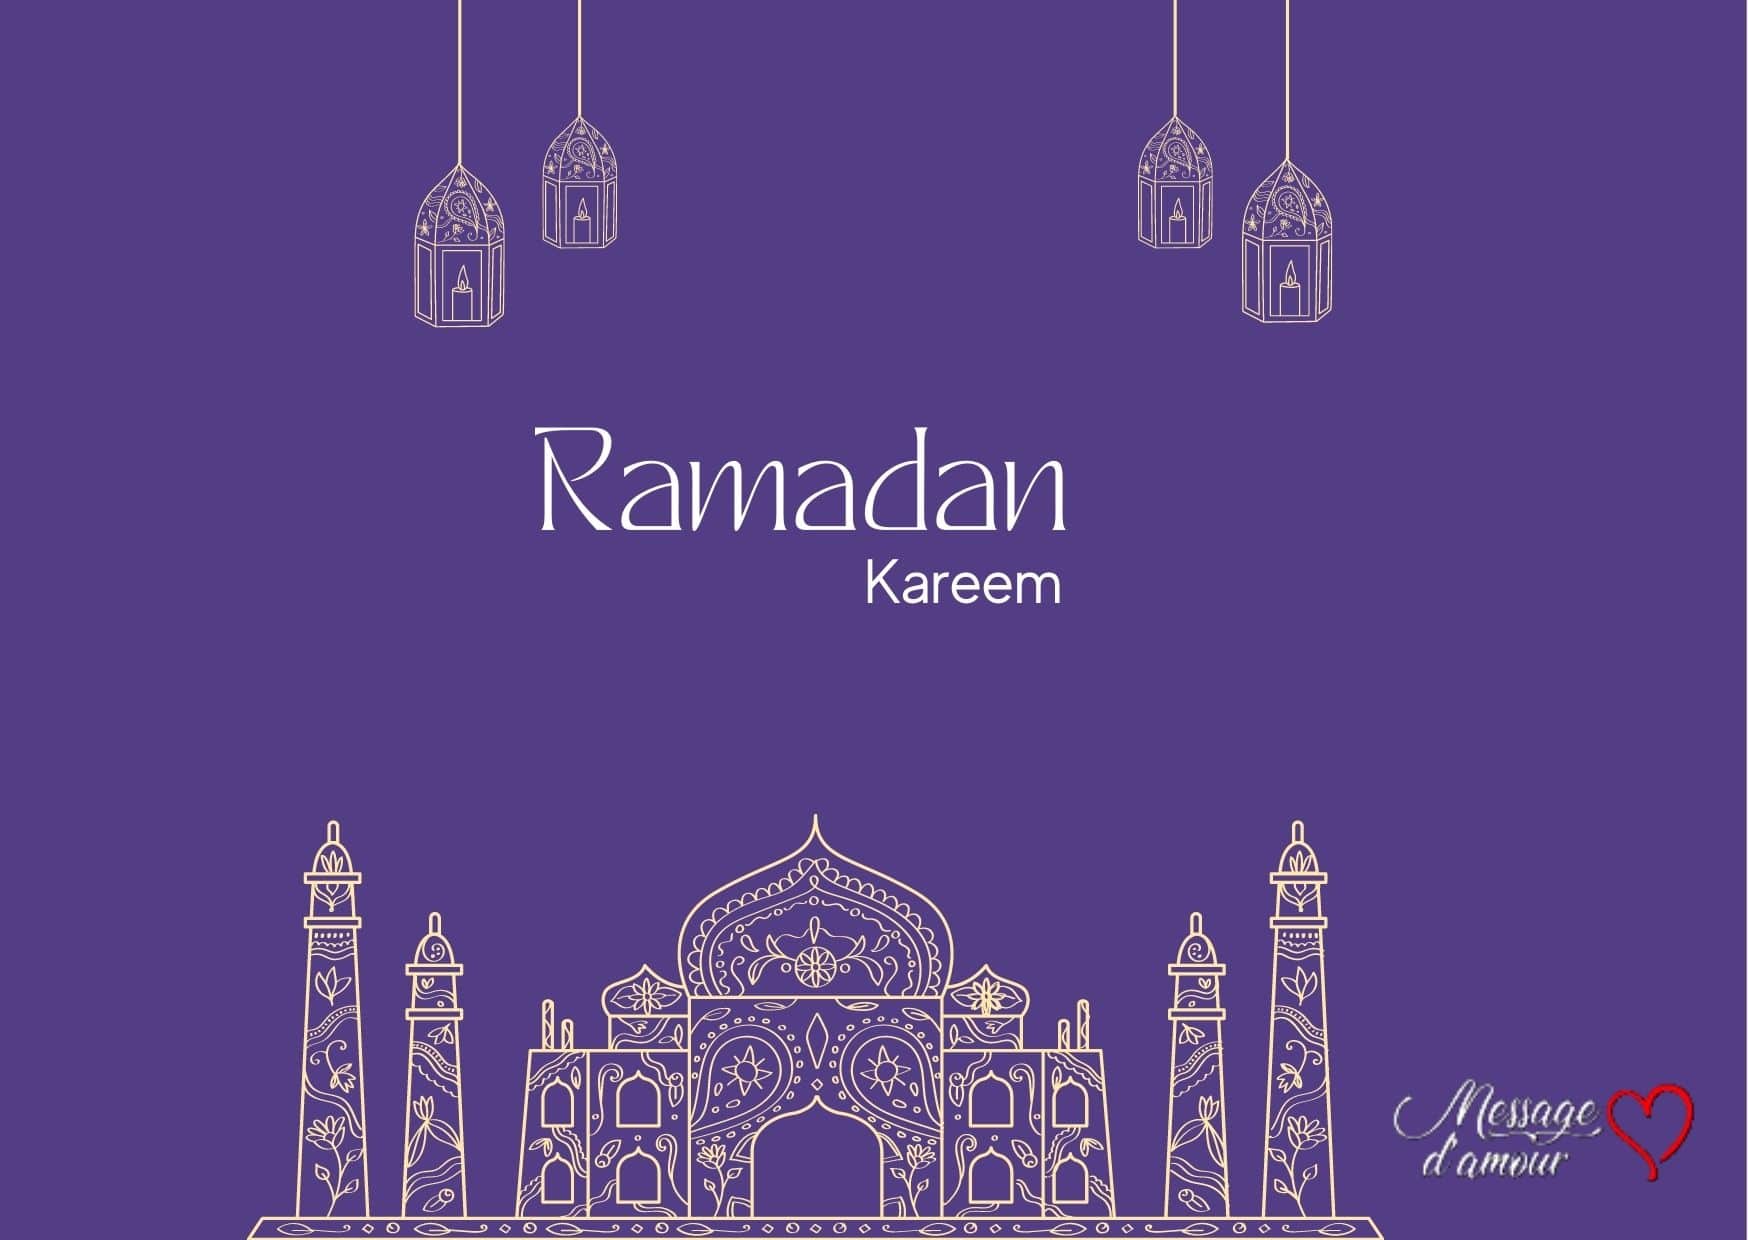 souhaiter un bon ramadan